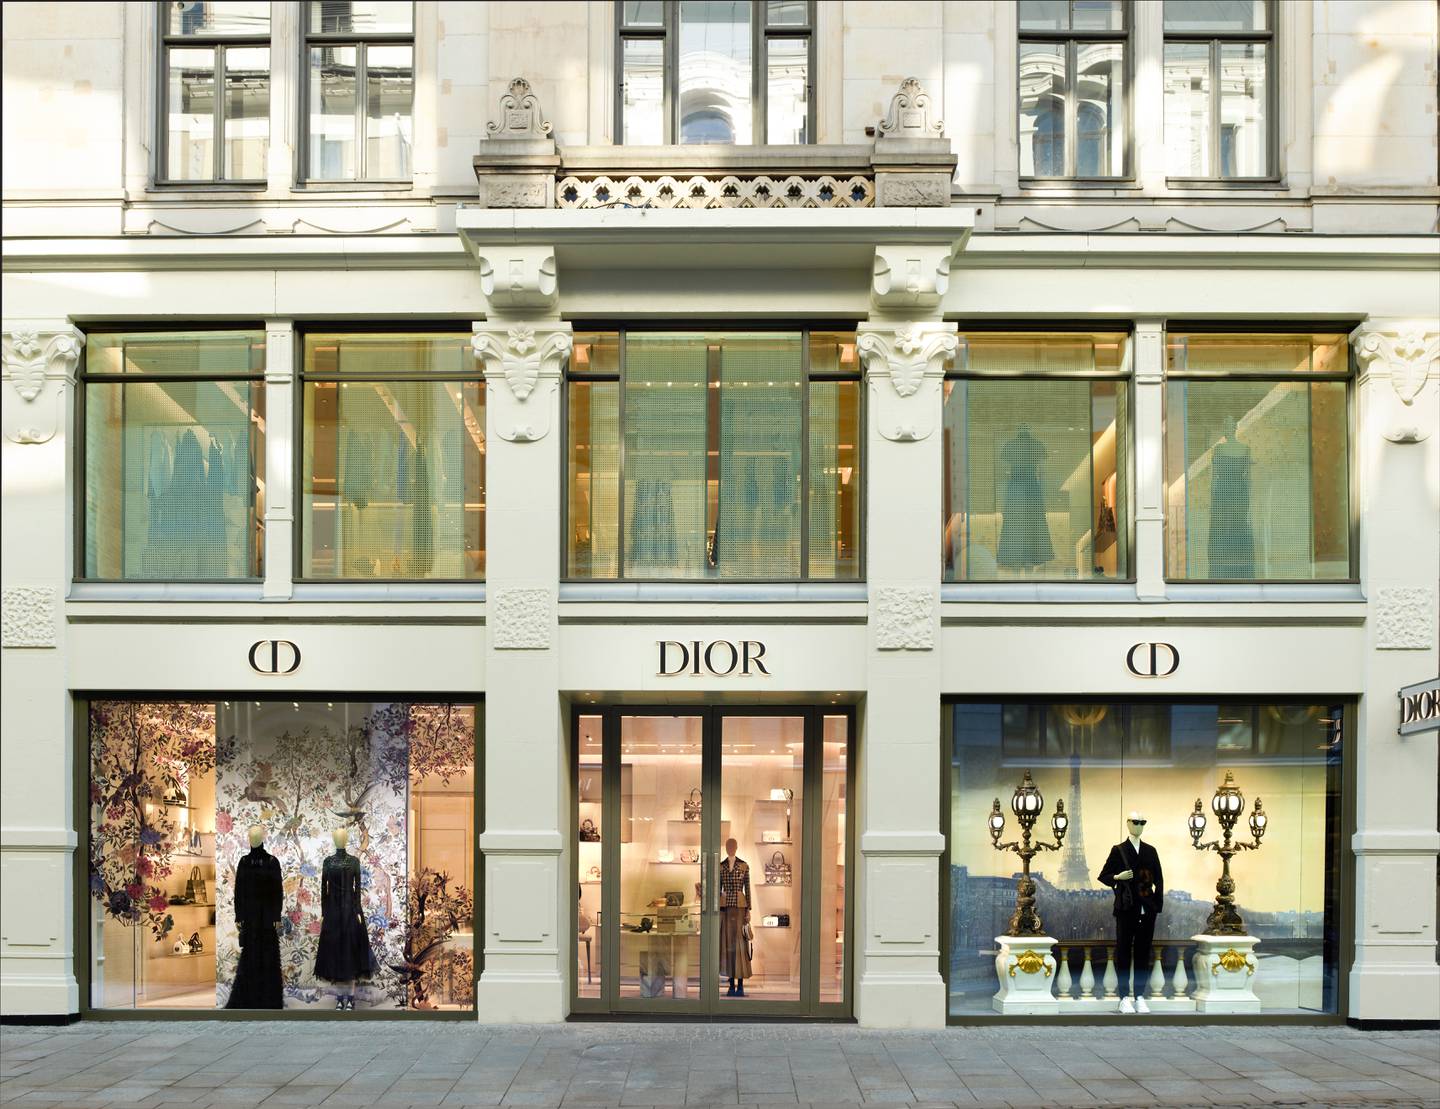 Diors butikk i Oslo har en jevn strøm av kunder til tross for økonomiske nedgangstider.